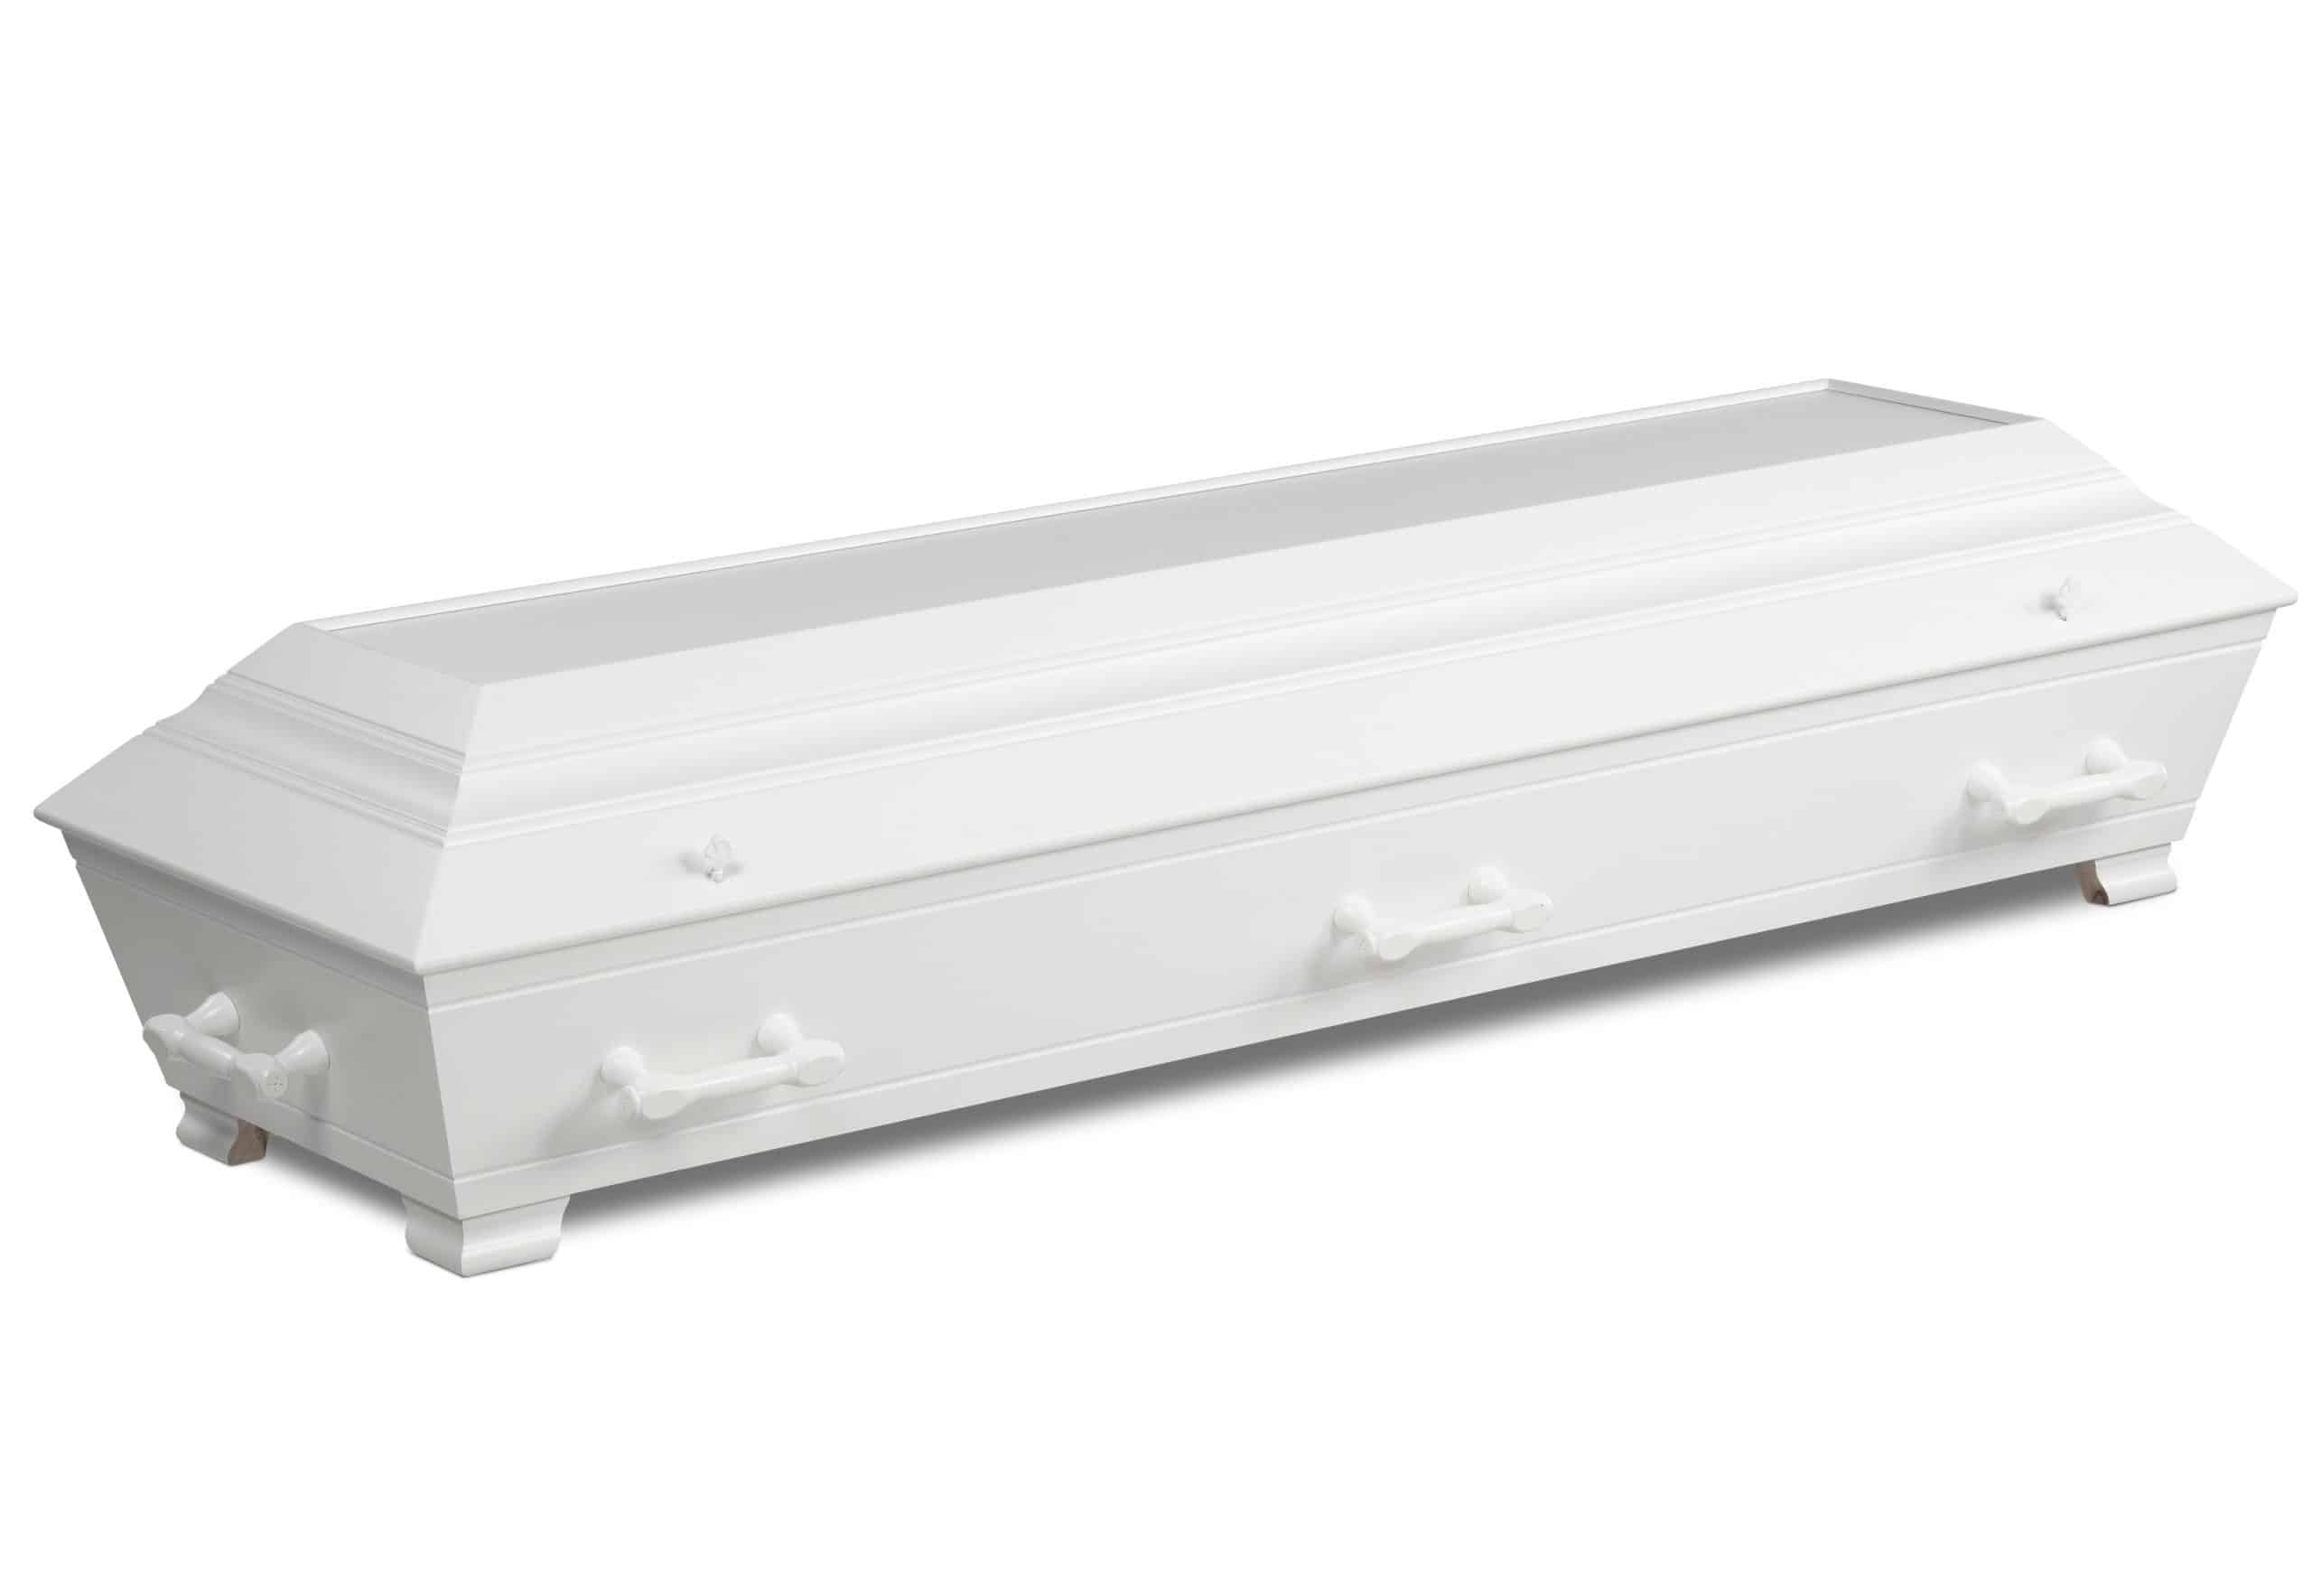 Standard hvit kiste til begravelser og bisettelser